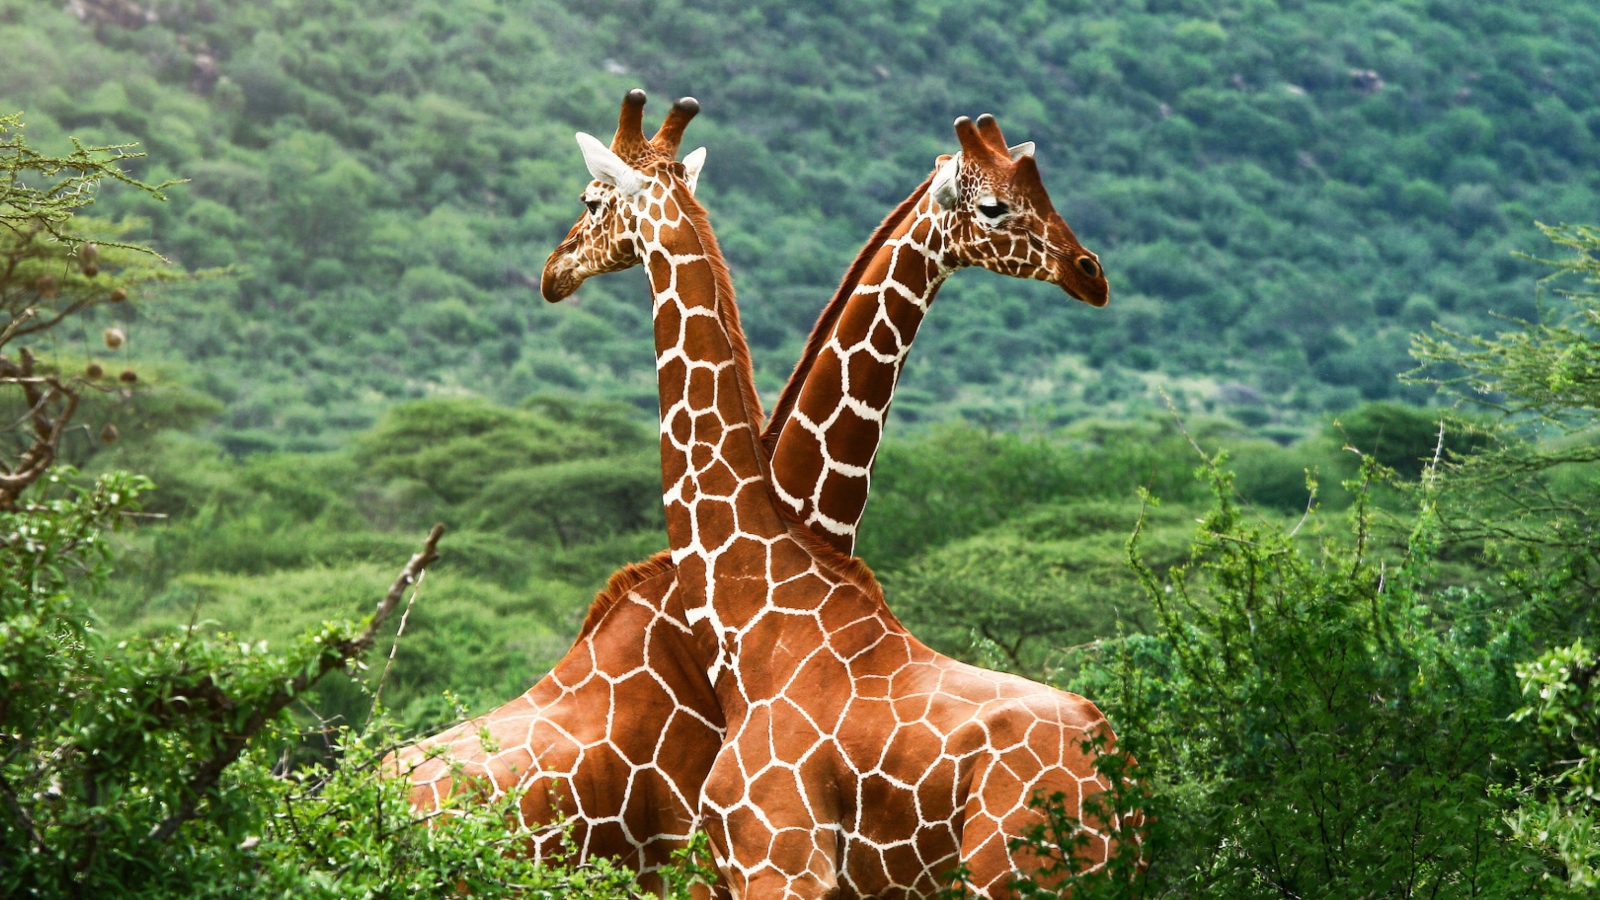 Giraffes wallpaper 1600x900